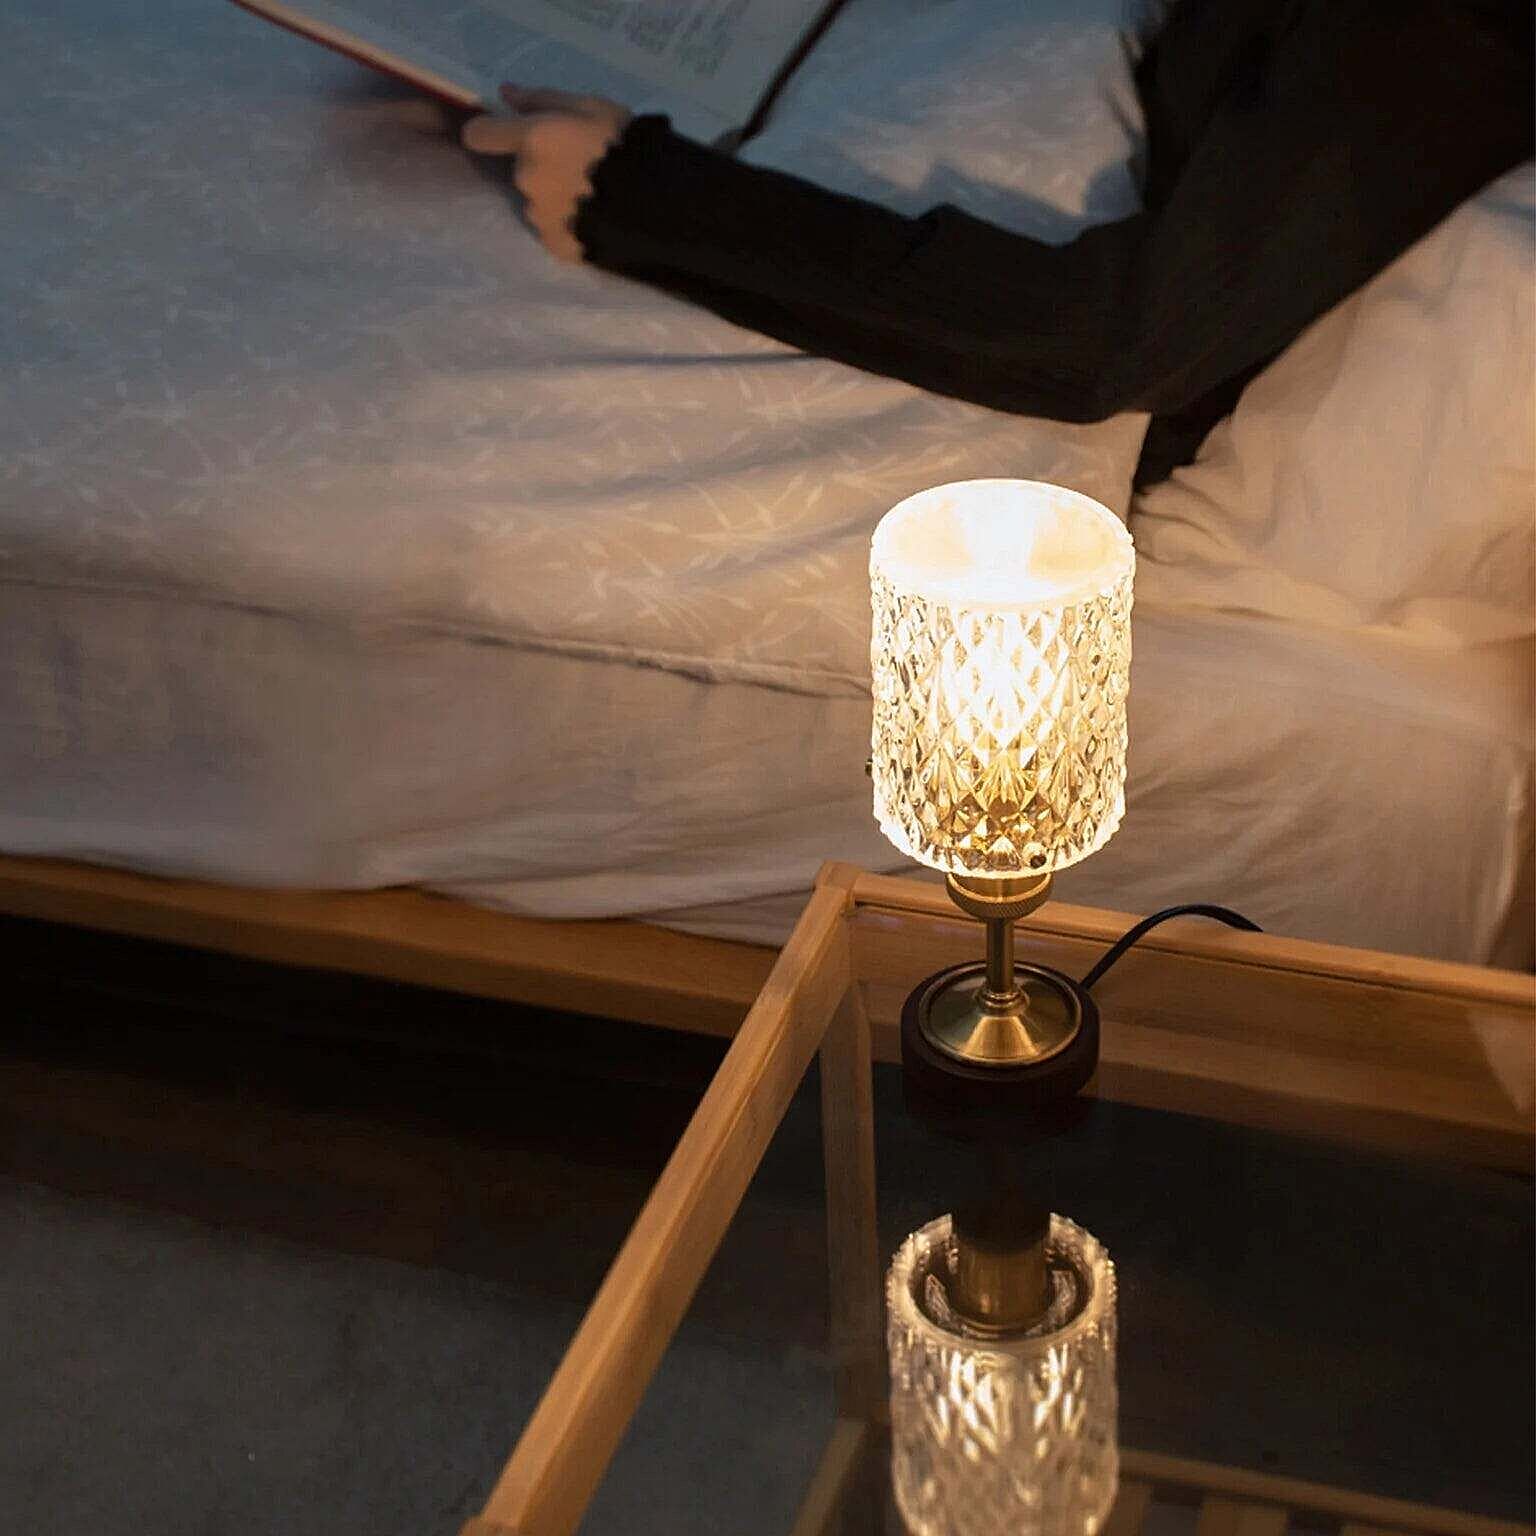 Ampoule ロイエ アンティークゴールド テーブルランプ 照明 ラグジュアリー 間接照明 LED E17 通販  家具とインテリアの通販【RoomClipショッピング】